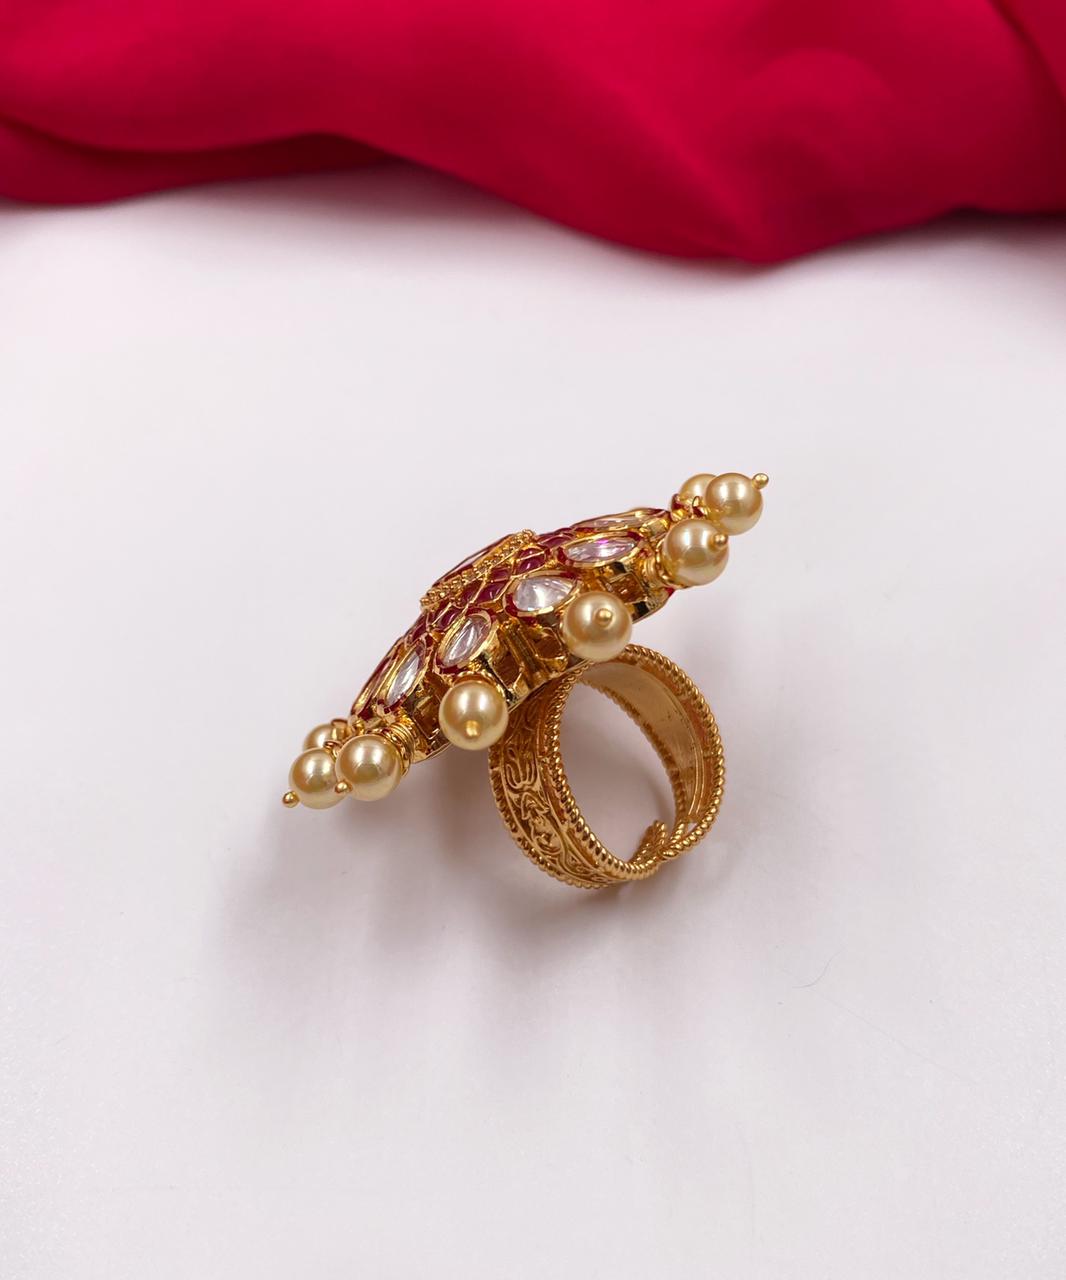 Designer Big Size Adjustable Rotating Bridal Kundan Finger Ring By Gehna Shop Finger rings